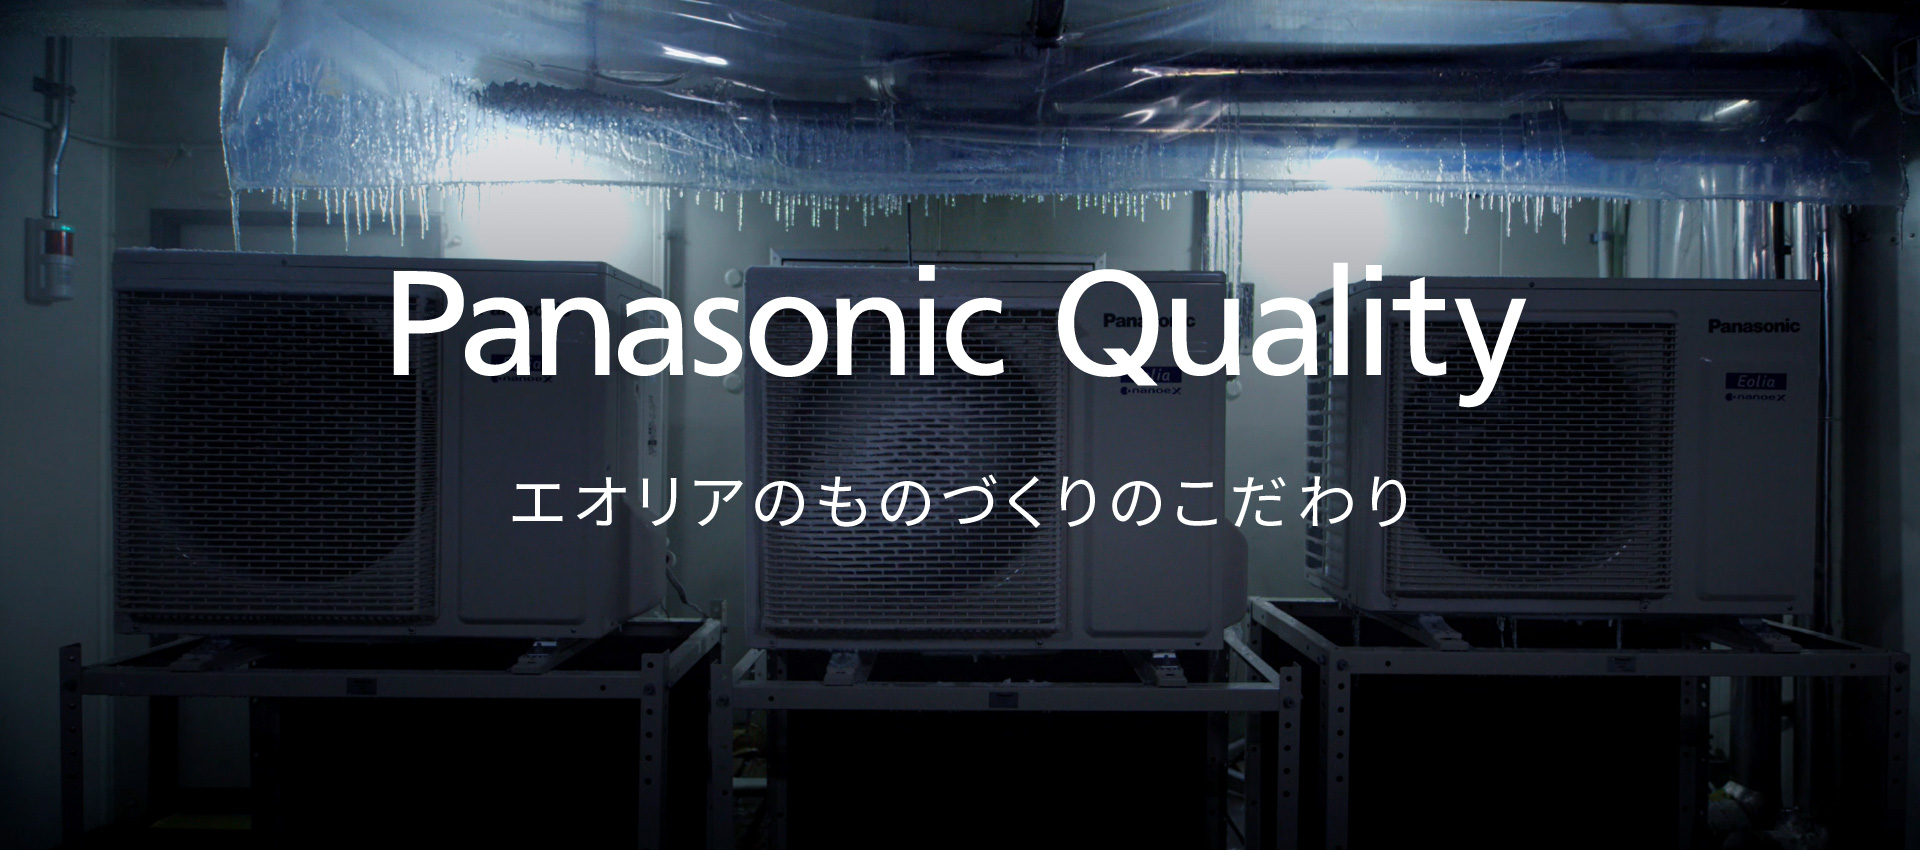 エオリア ものづくりのこだわり Panasonic Qualityのメインビジュアルです